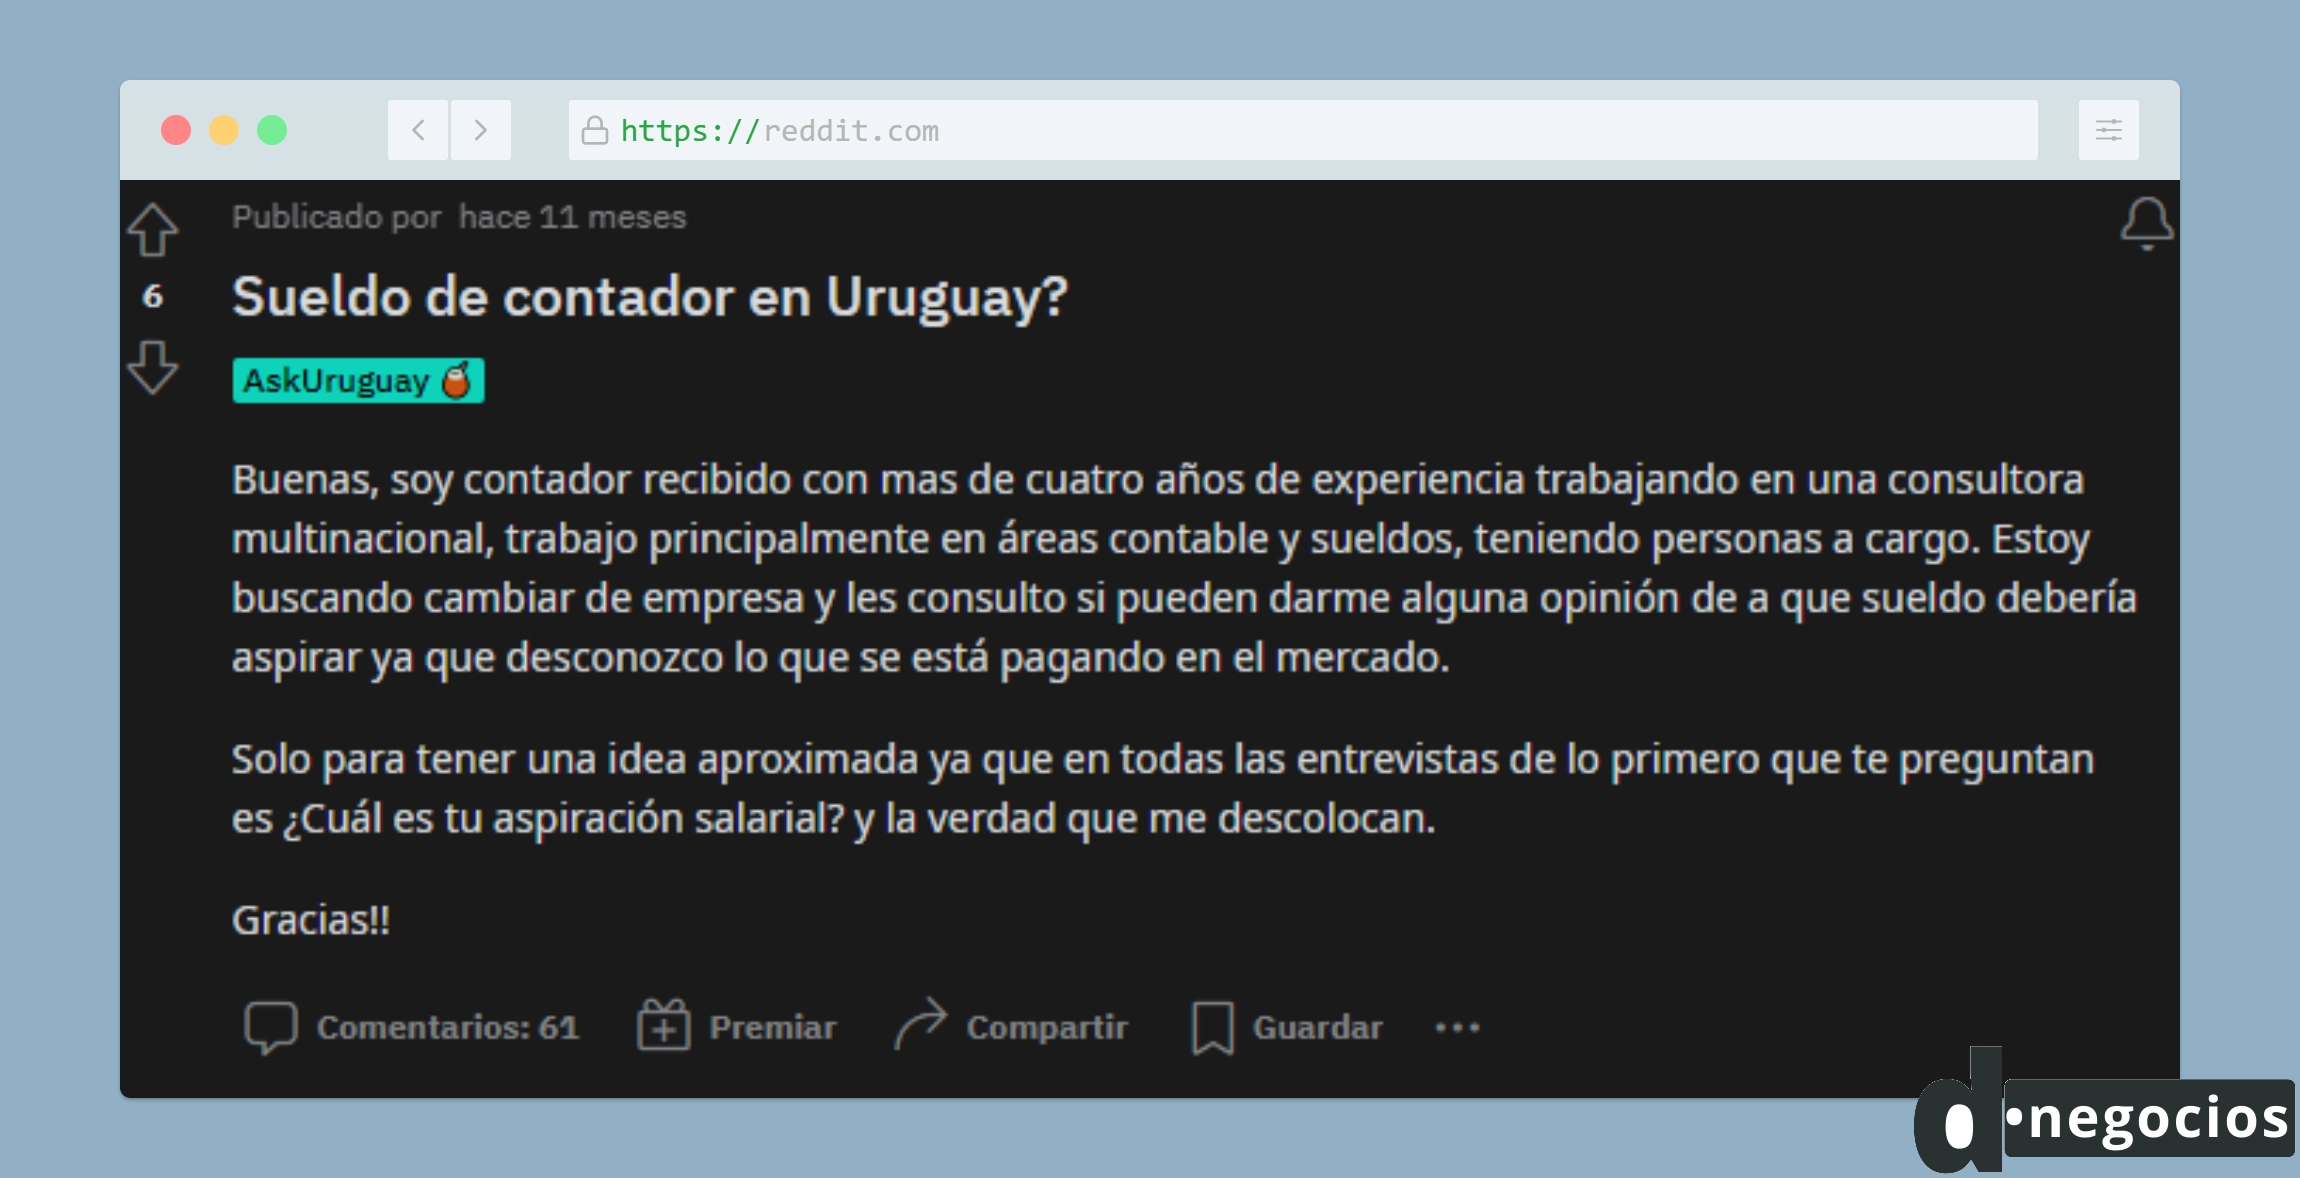 Pregunta en Reddit sobre cual es el sueldo de contador en Uruguay.